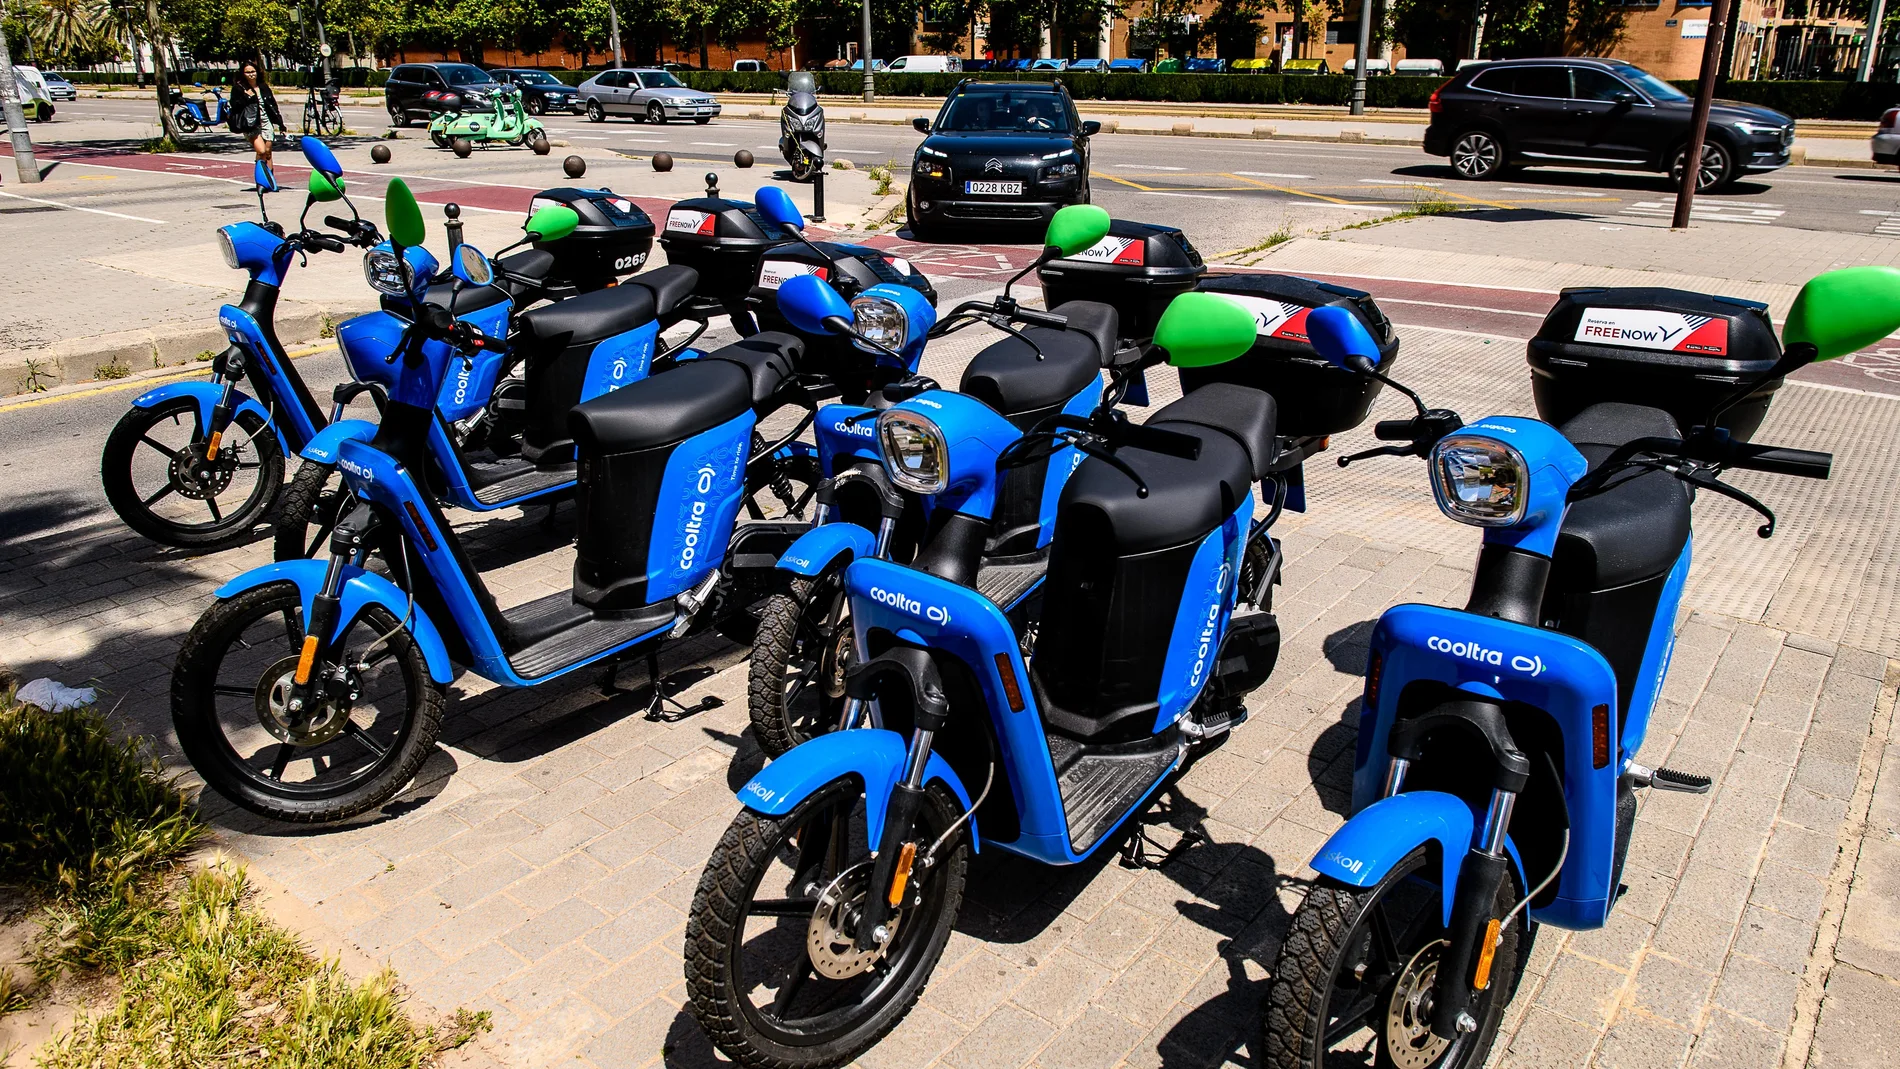 Servicio de alquiler de motos eléctricas en Valencia